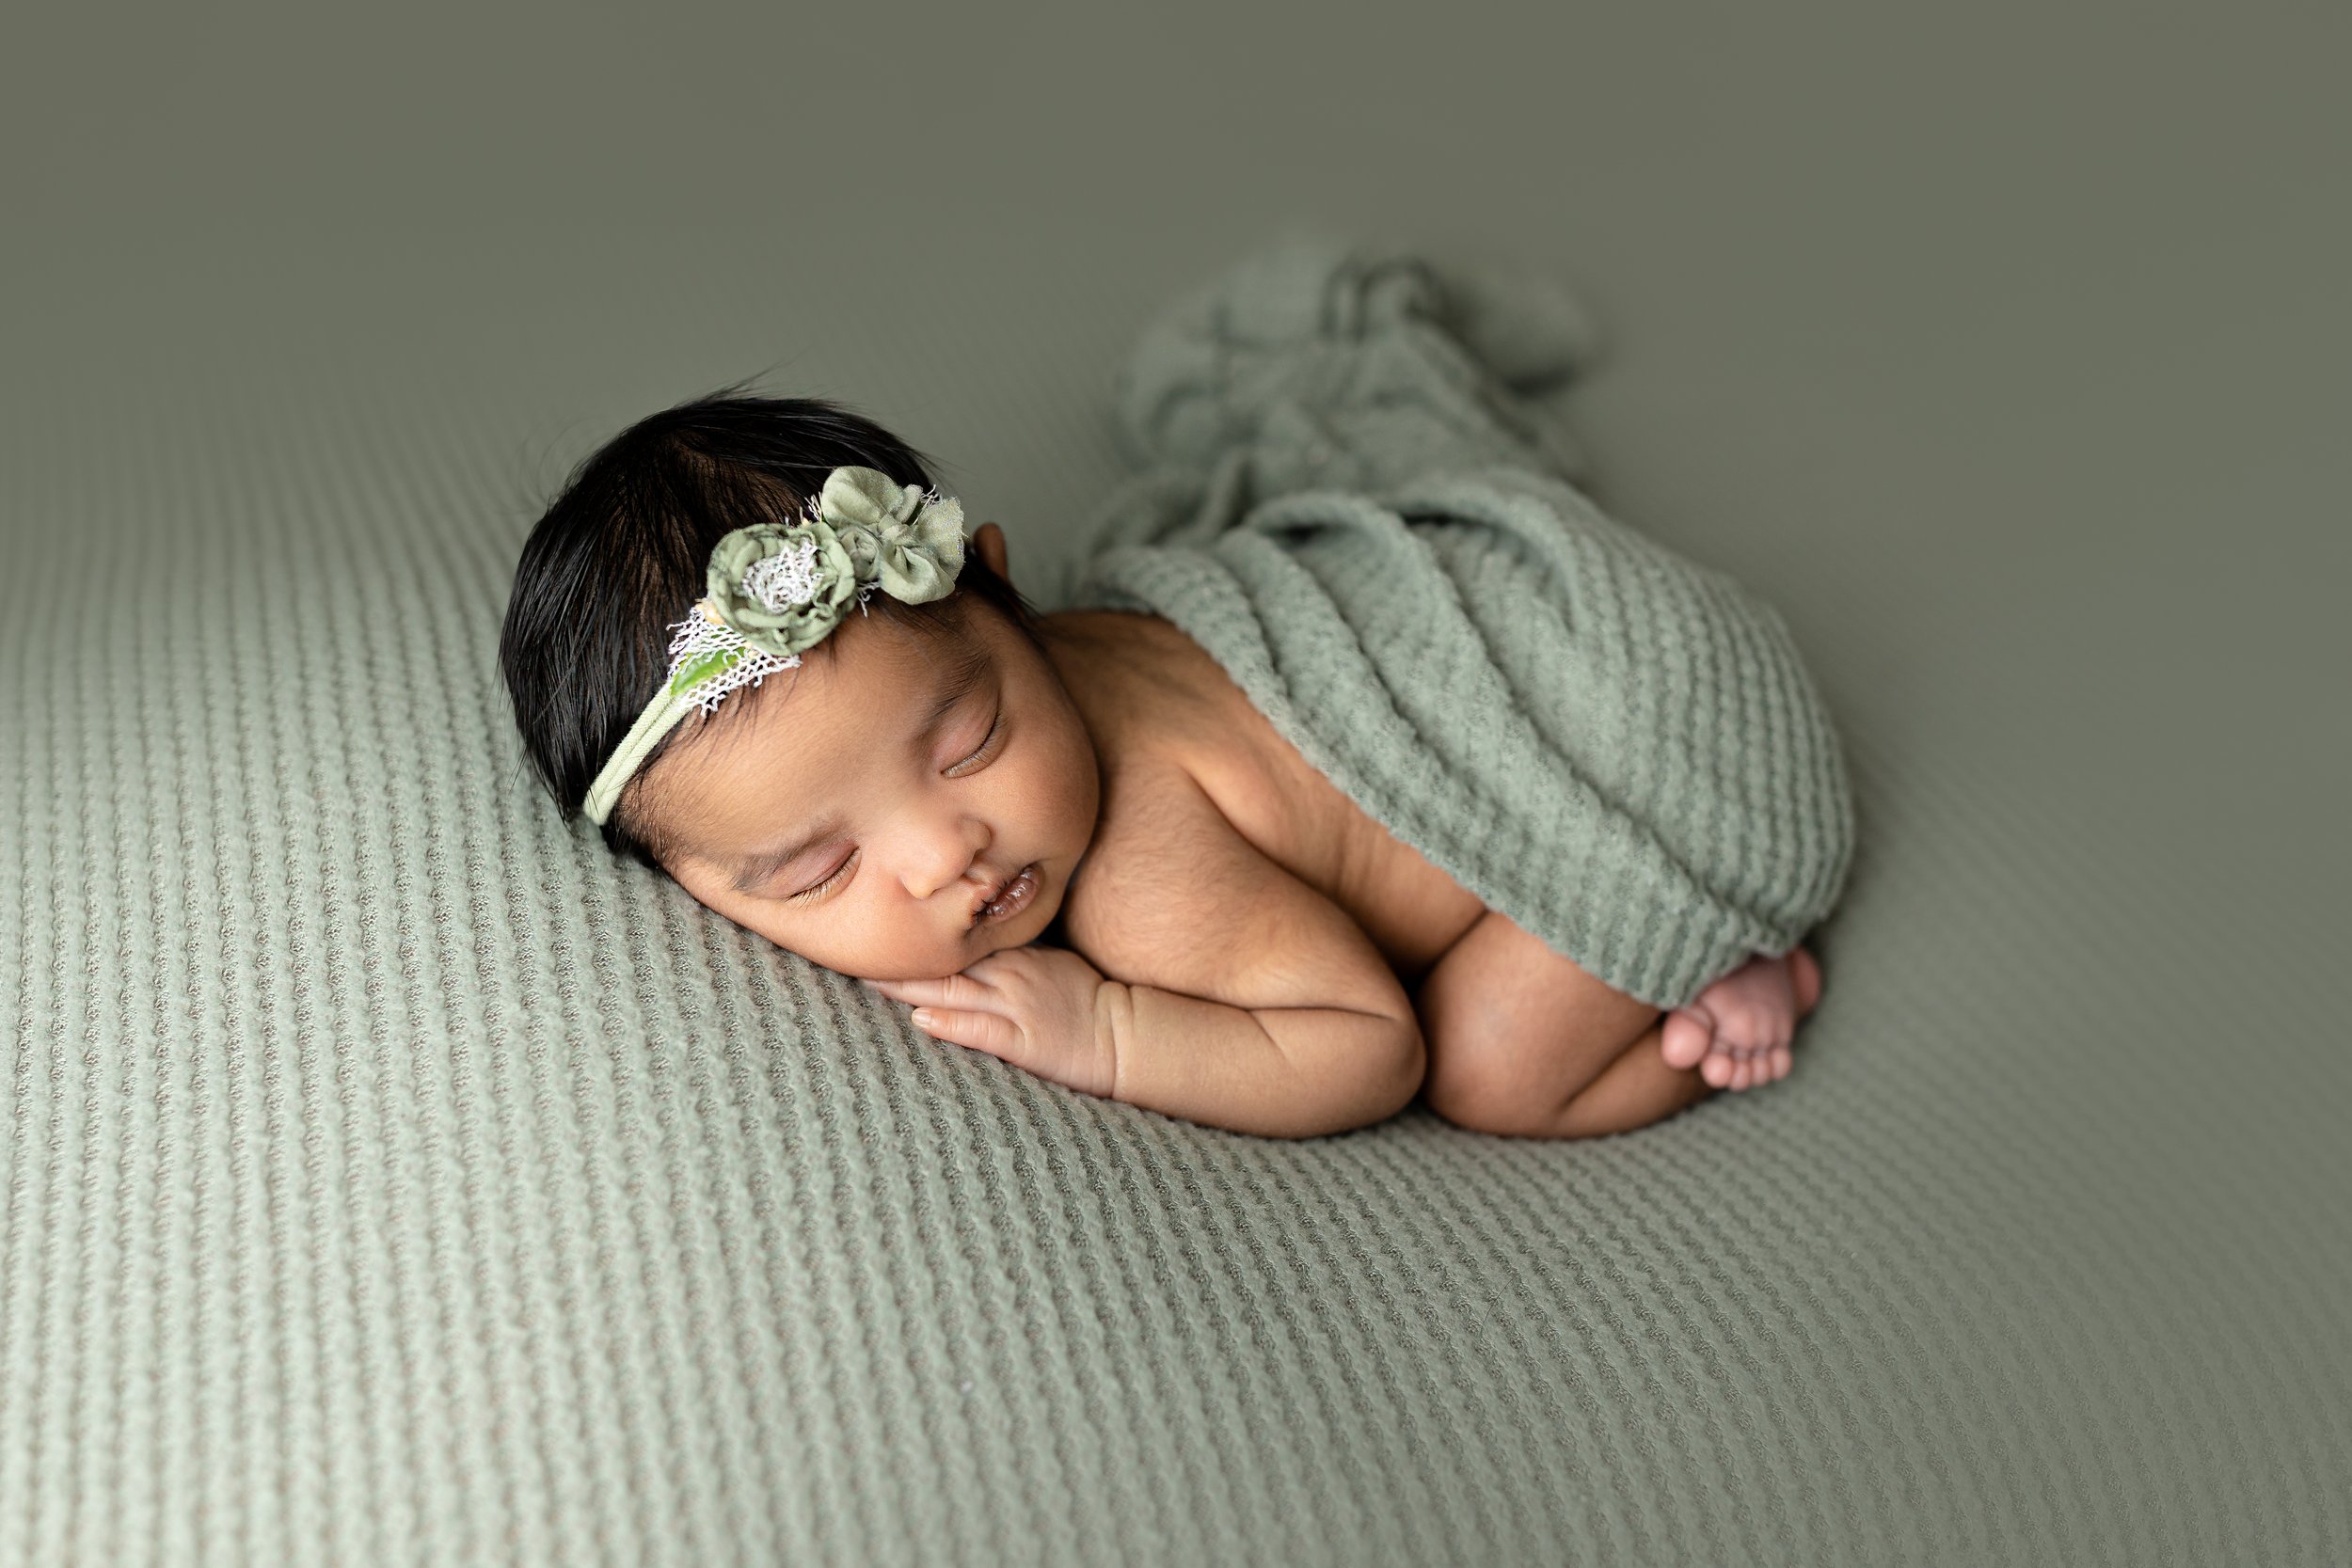 sasha-columbus-newborn-photographer-43.jpg